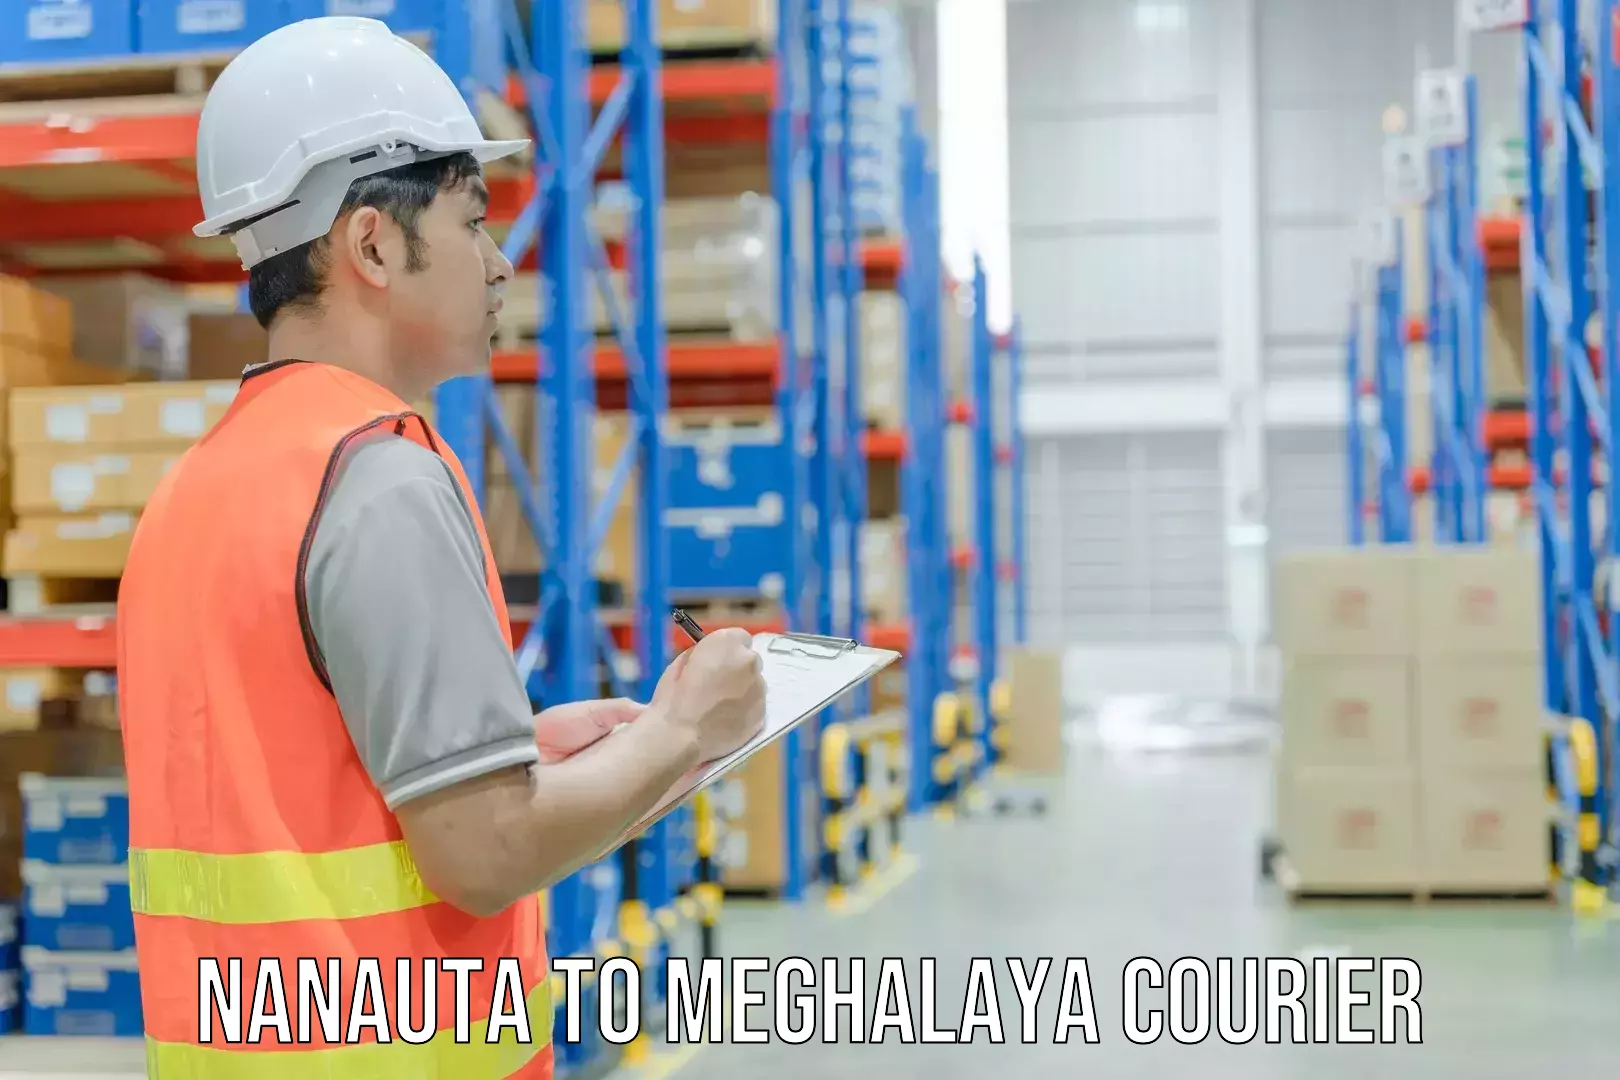 Next-generation courier services Nanauta to Tikrikilla